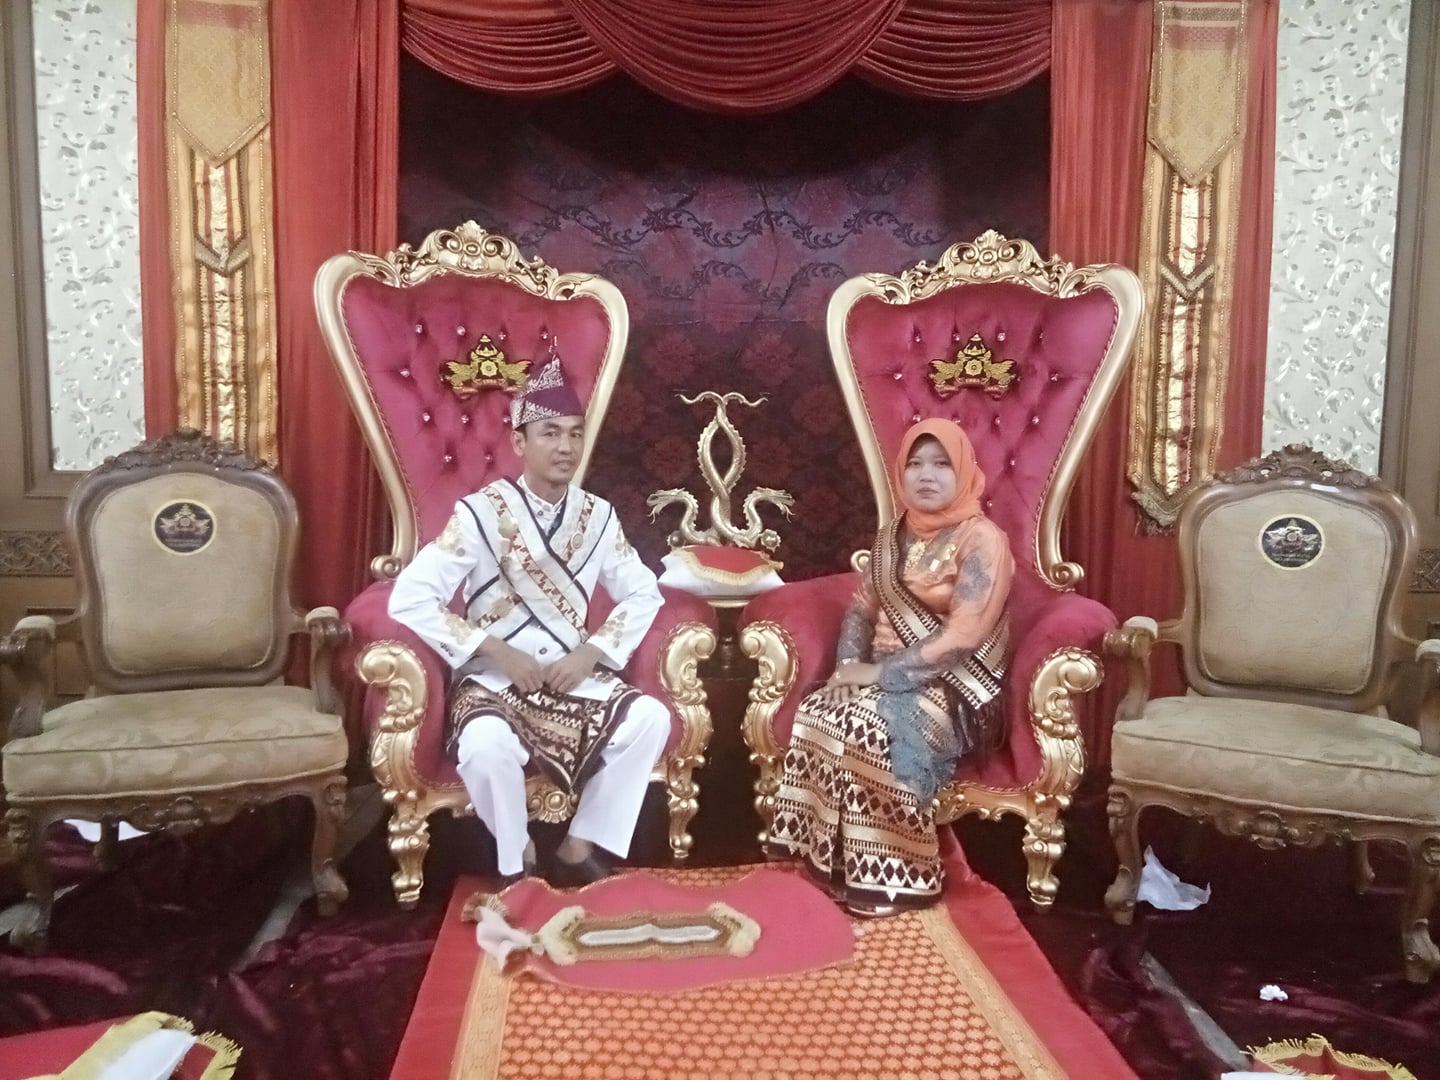 The Maharaja & Maharanee of Kampung Dalam Lampung Krui